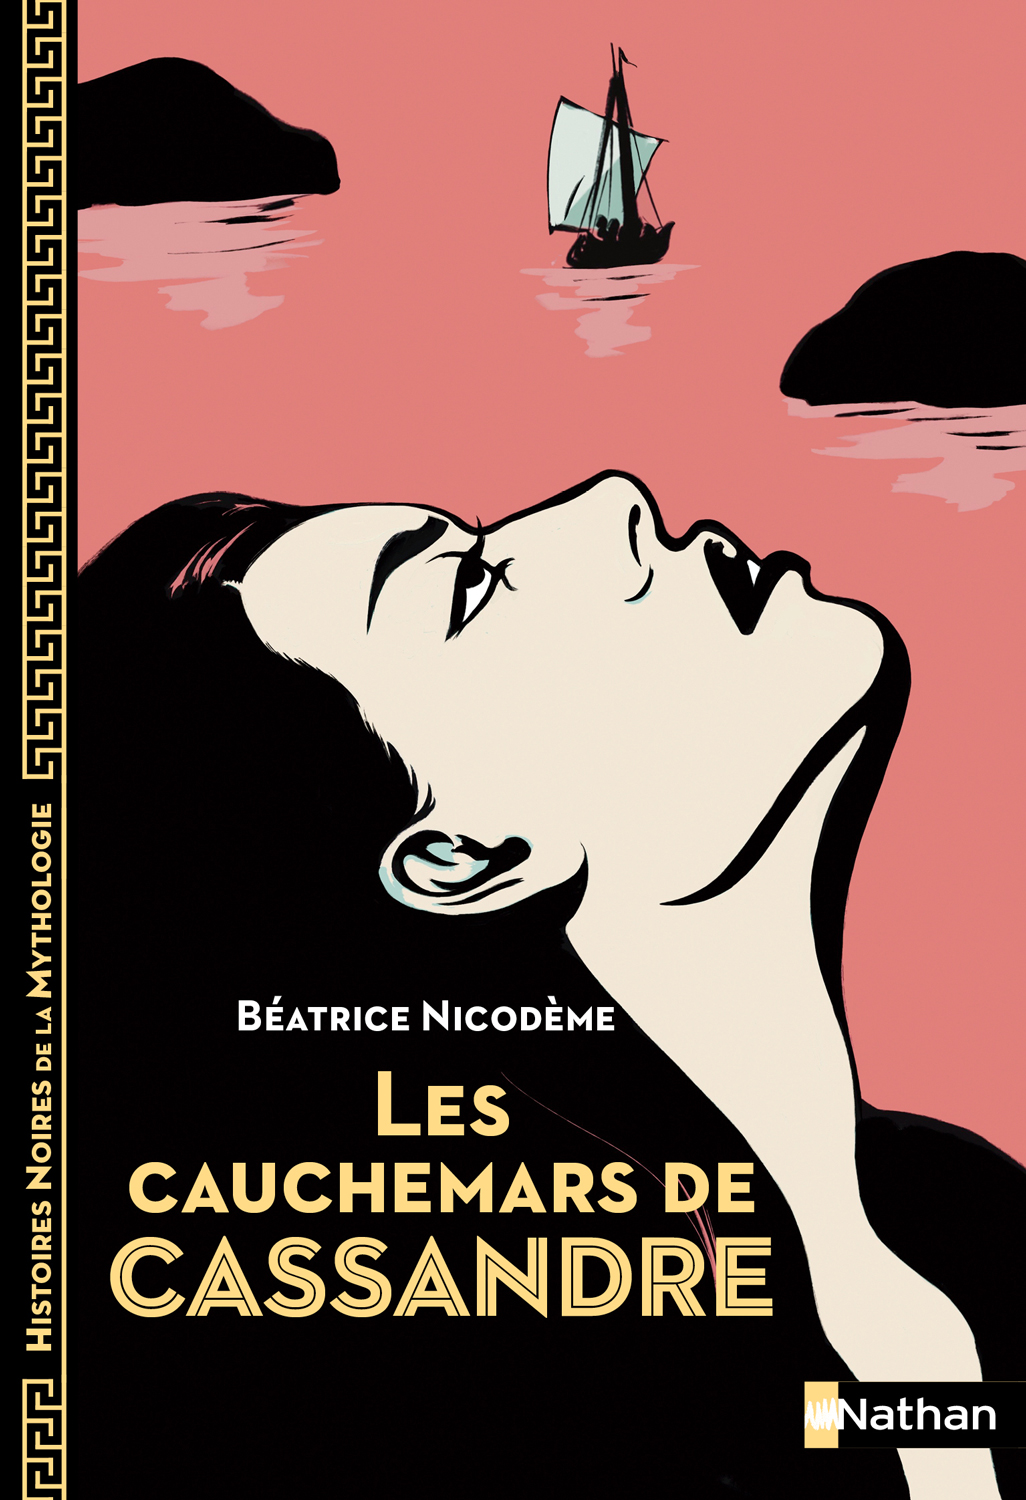 Beatrice Nicodeme autrice couverture du roman Les cauchemars de Cassandre